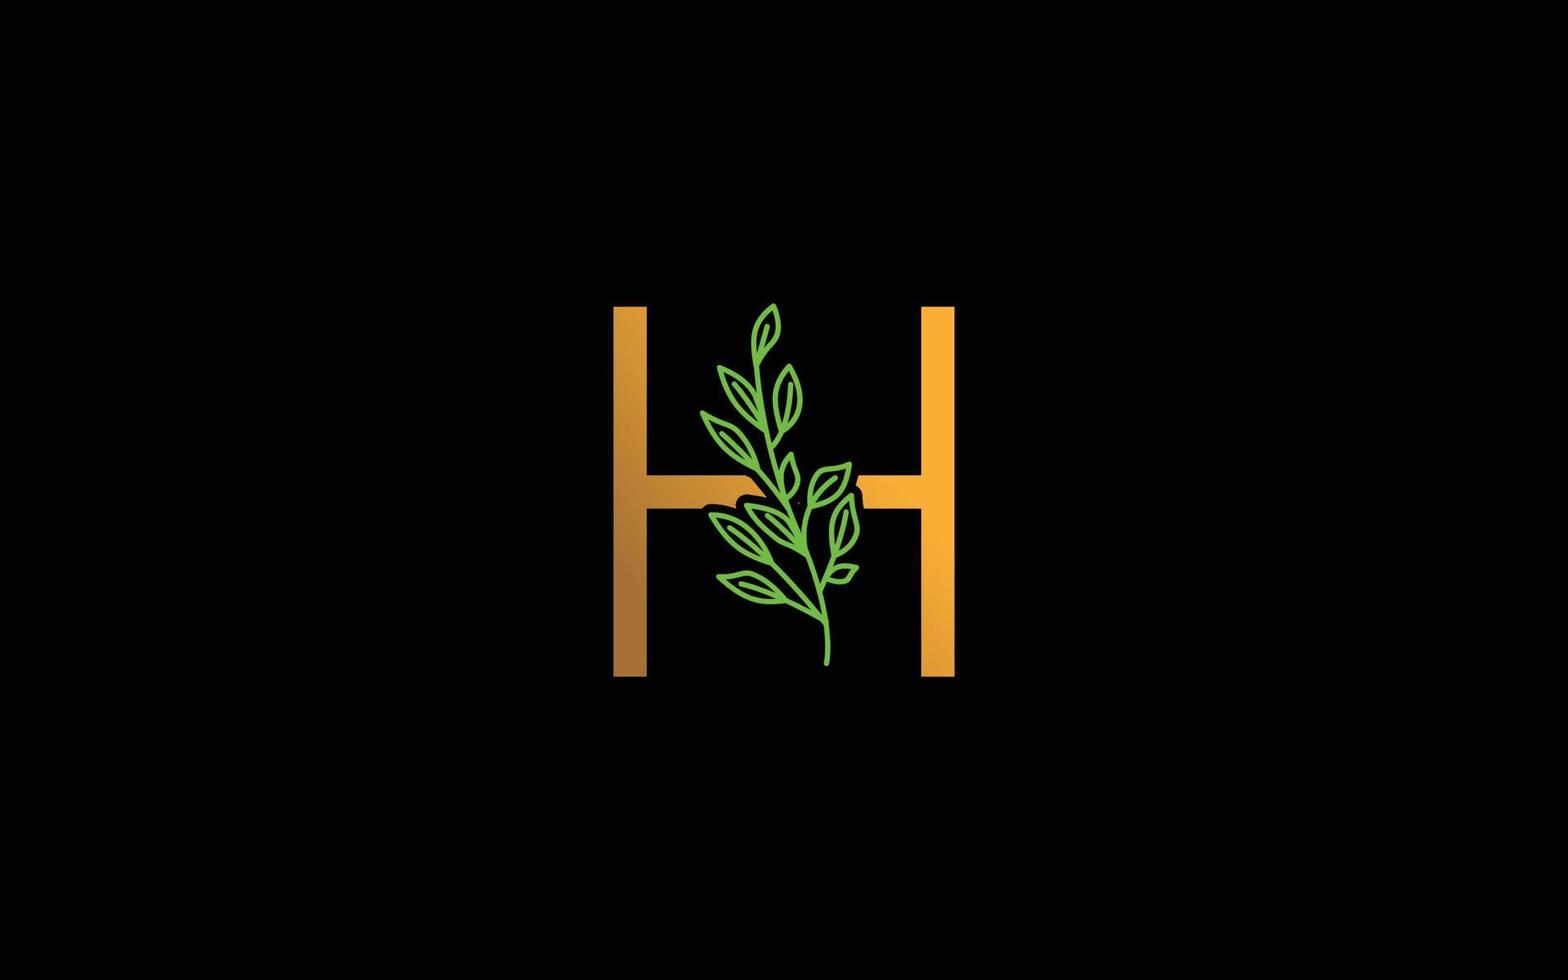 h logo vecteur floral pour la société d'identité. illustration vectorielle de lettre initiale nature modèle pour votre marque.